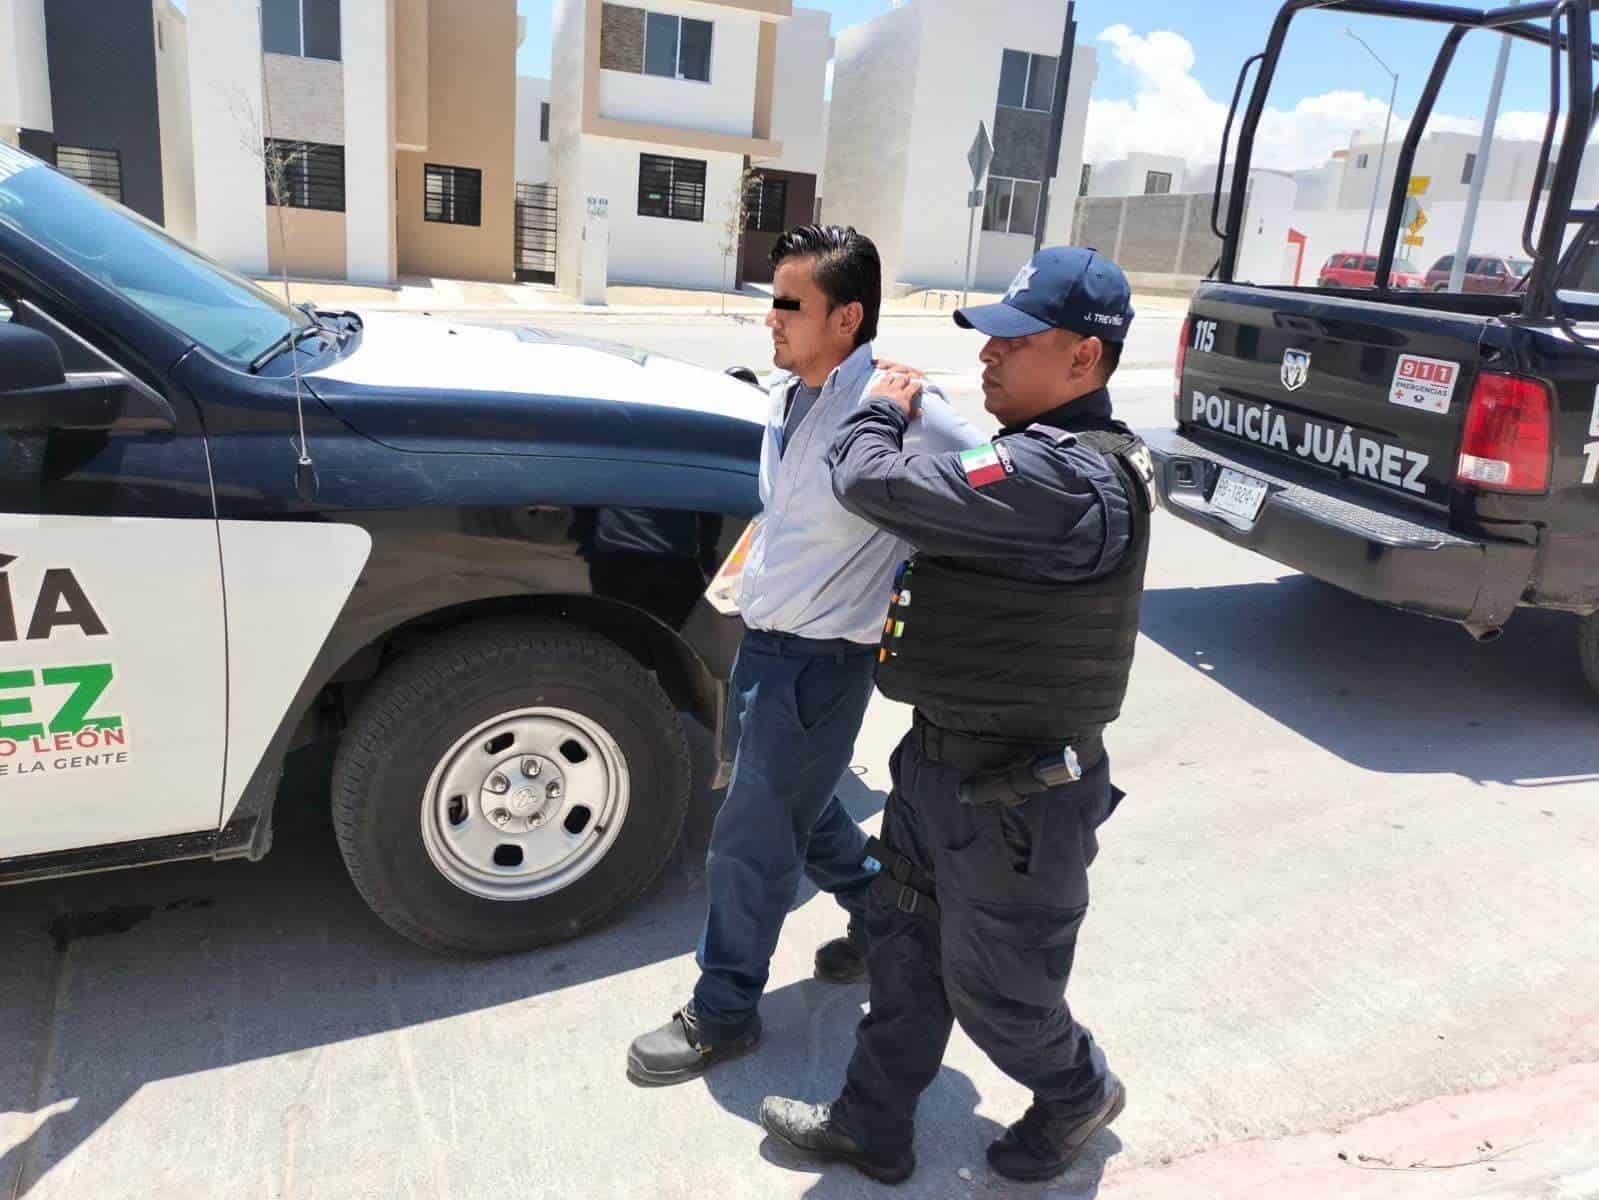 Un repartidor de una empresa de juegos, fue detenido por elementos de la Secretaría de Seguridad Pública del municipio de Juárez, al ser acusado de robar en una tienda de abarrotes.